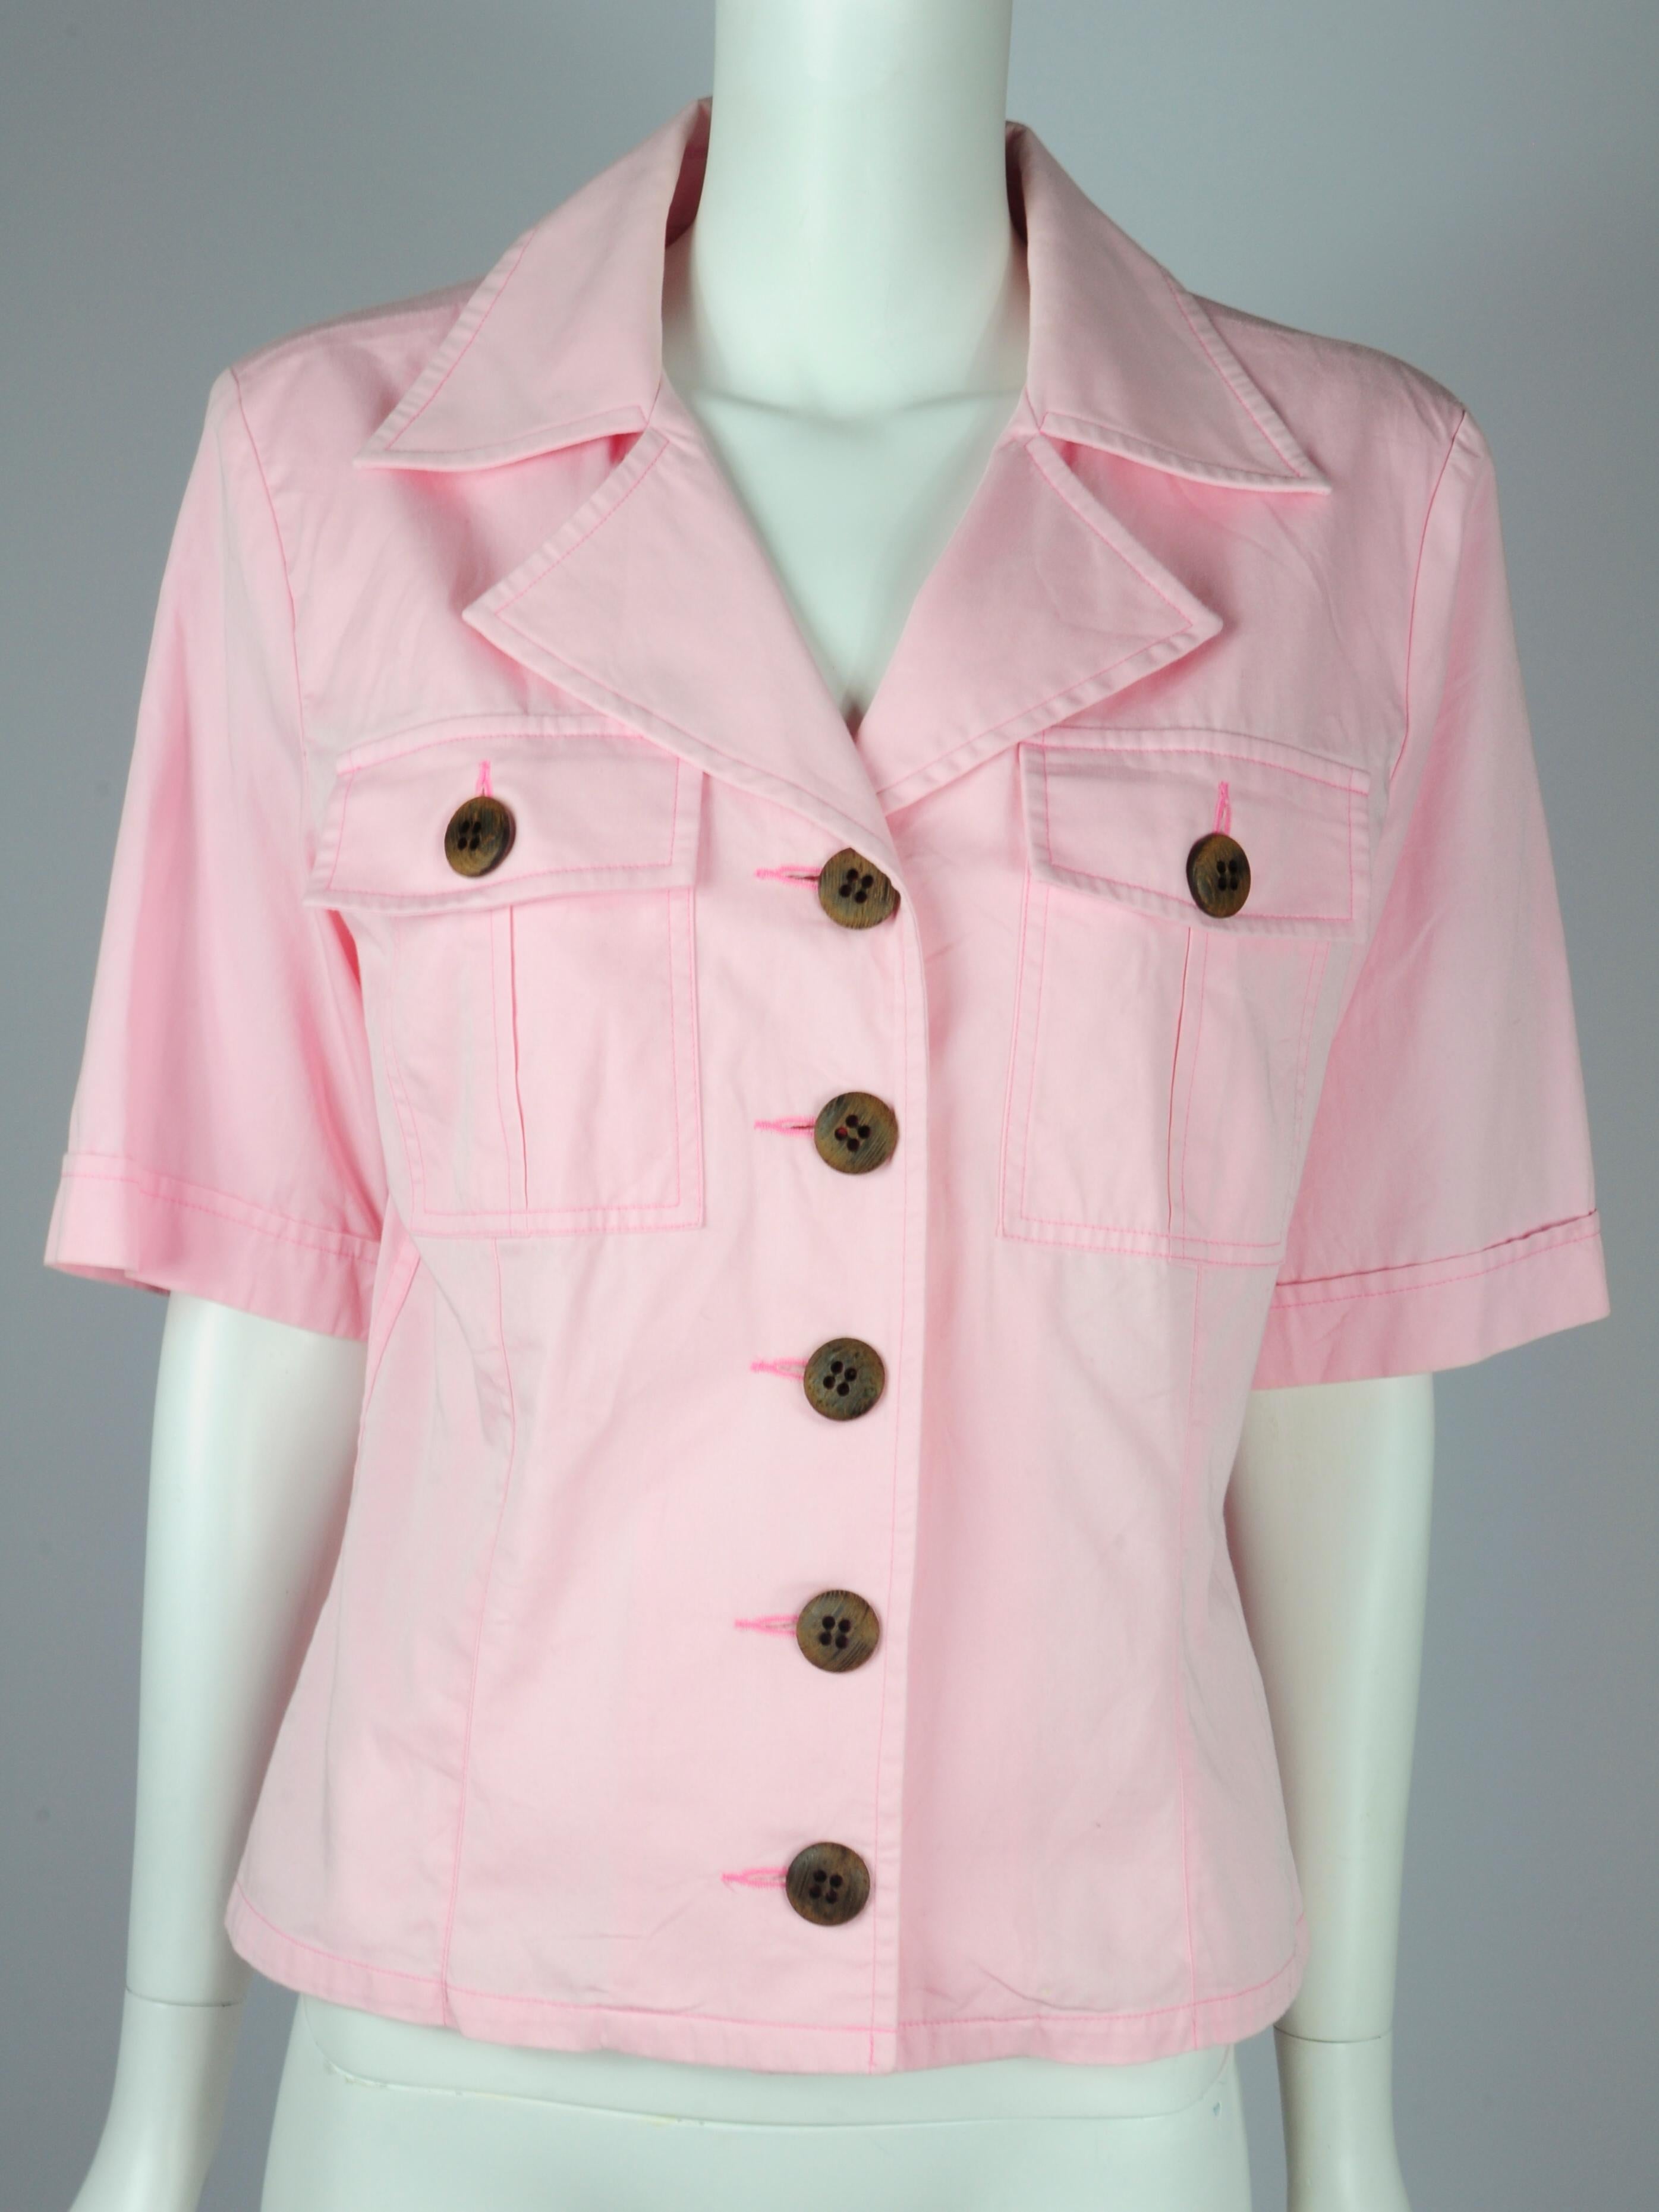 Yves Saint Laurent Saharienne Safari Two Piece Skirt Suit Set Pink Pockets 1990s For Sale 9